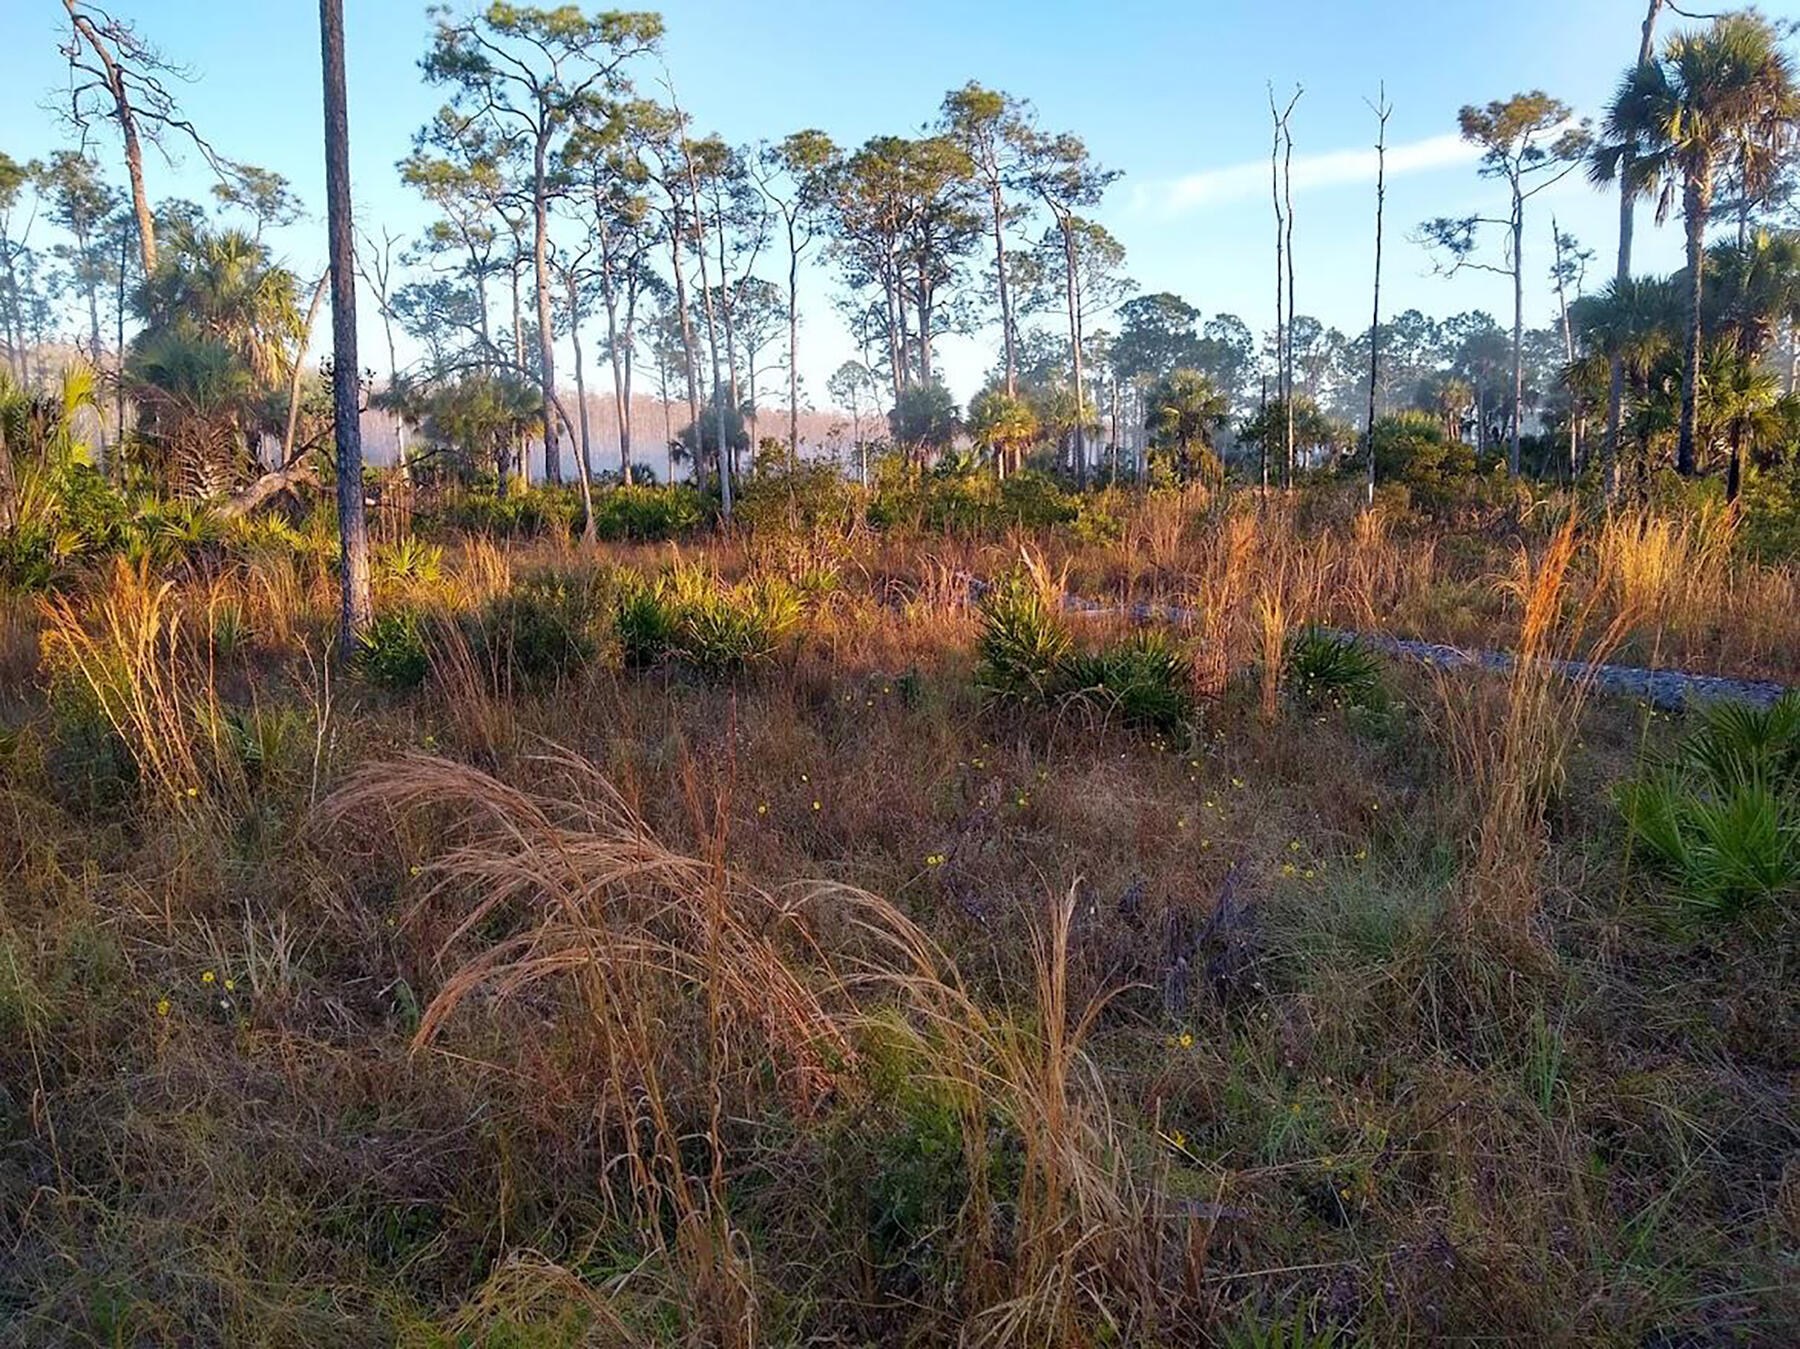 A Florida landscape.